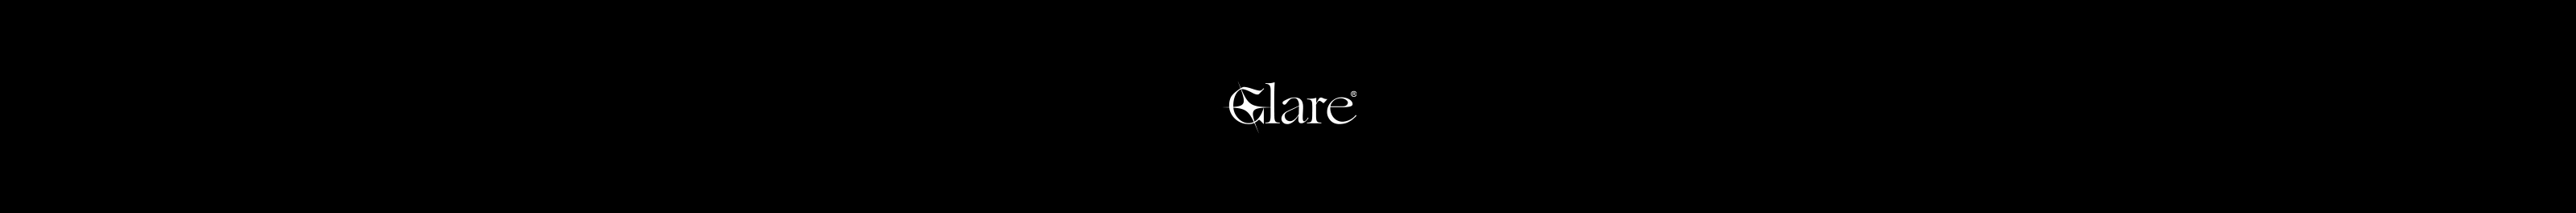 Glare ☺'s profile banner